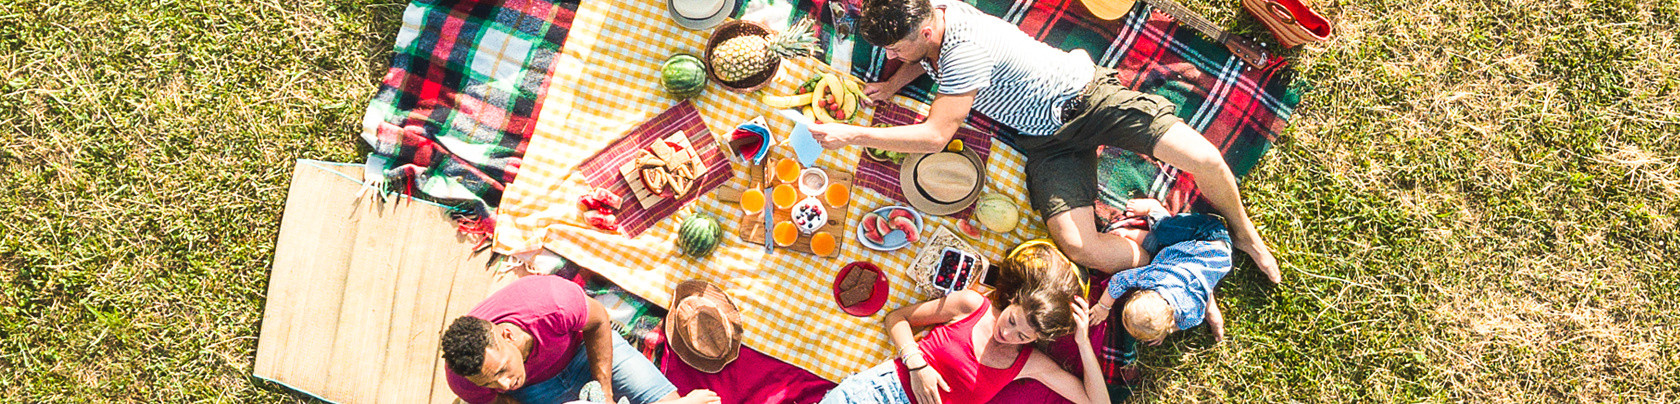 Come organizzare un picnic: ecco cosa portare e quali ricette preparare